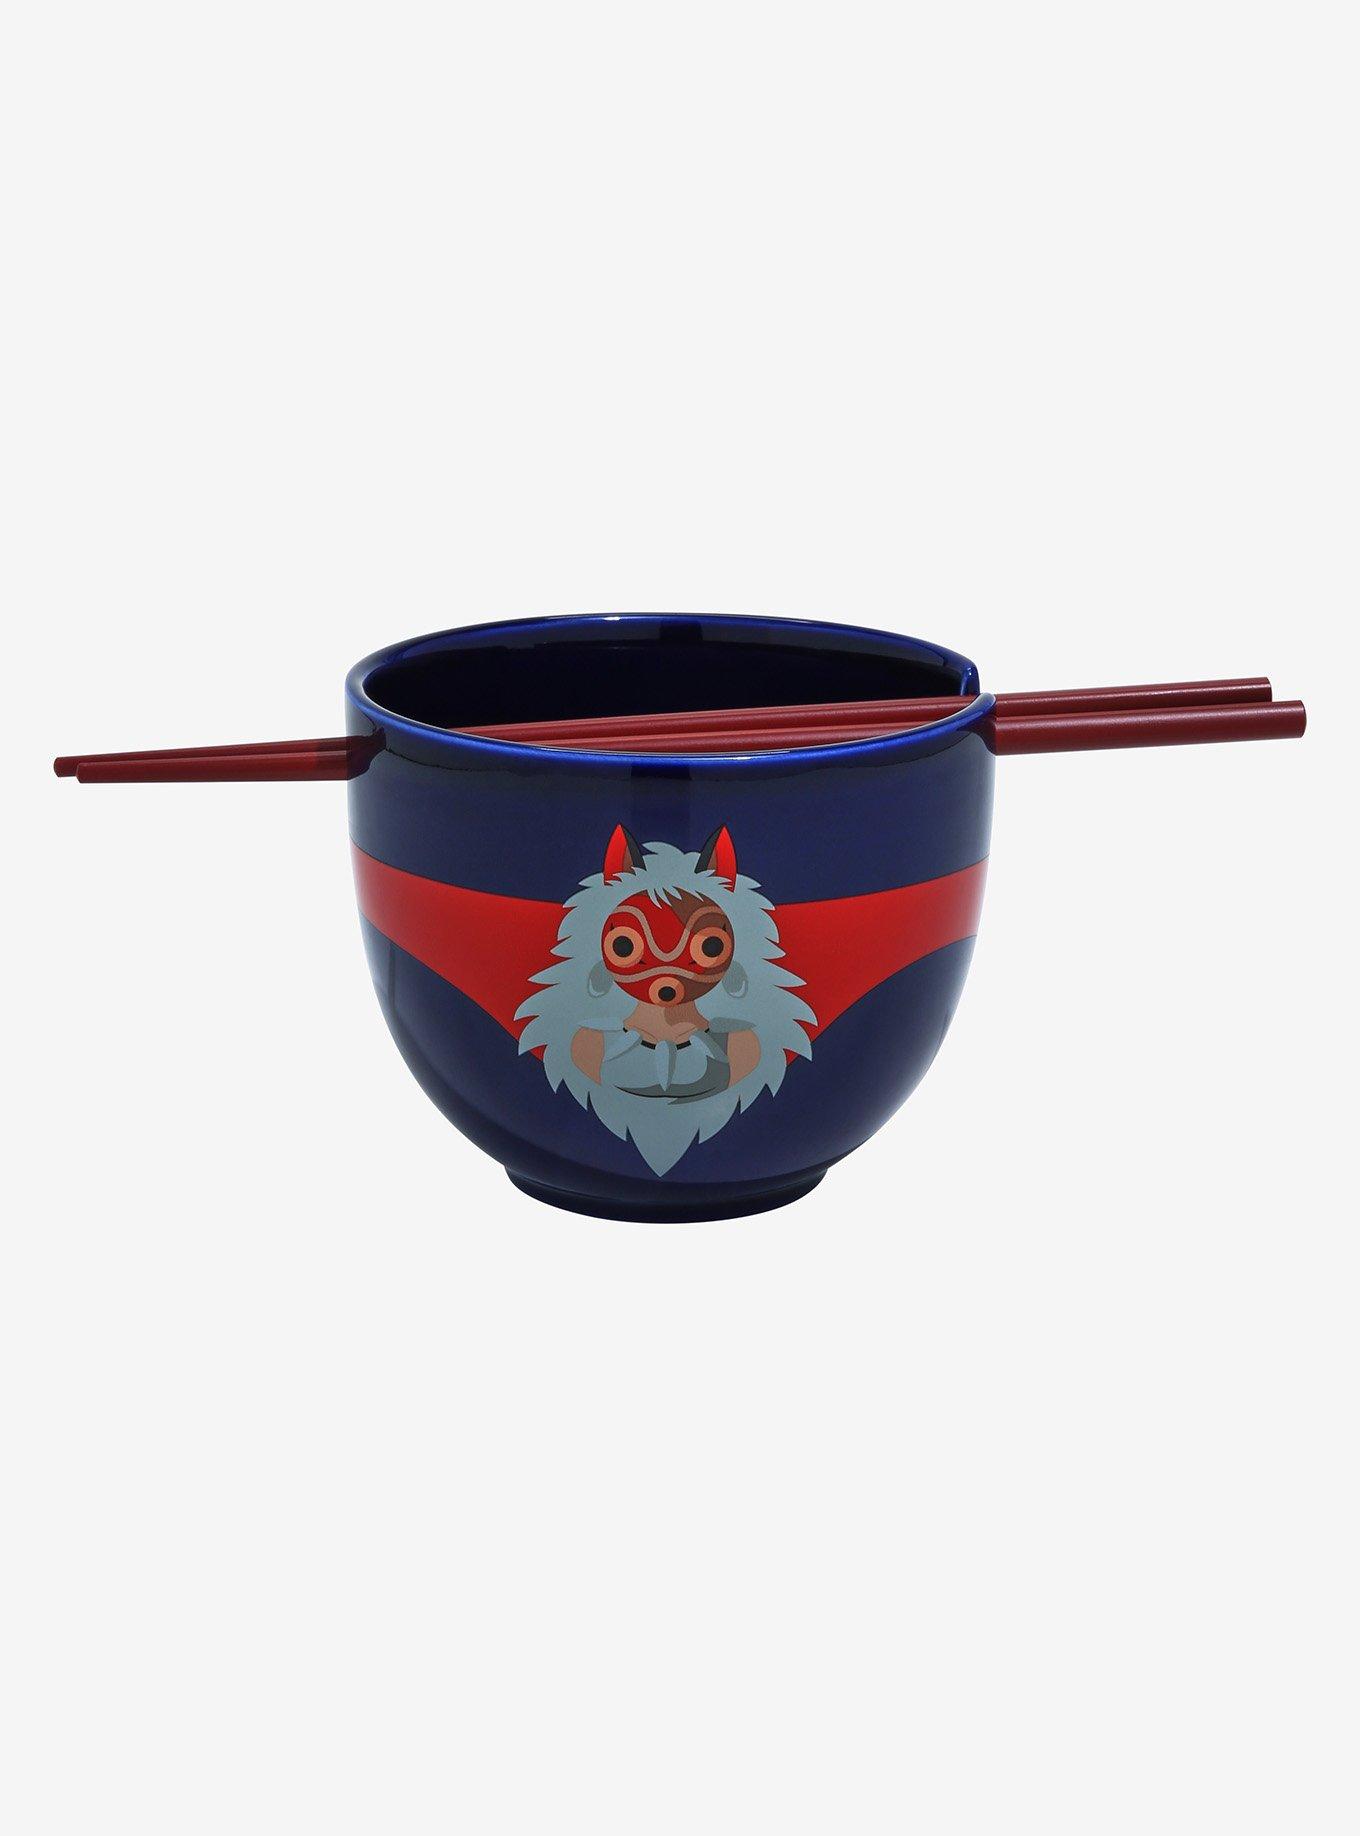 Studio Ghibli Princess Mononoke San Portrait Ramen Bowl with Chopsticks